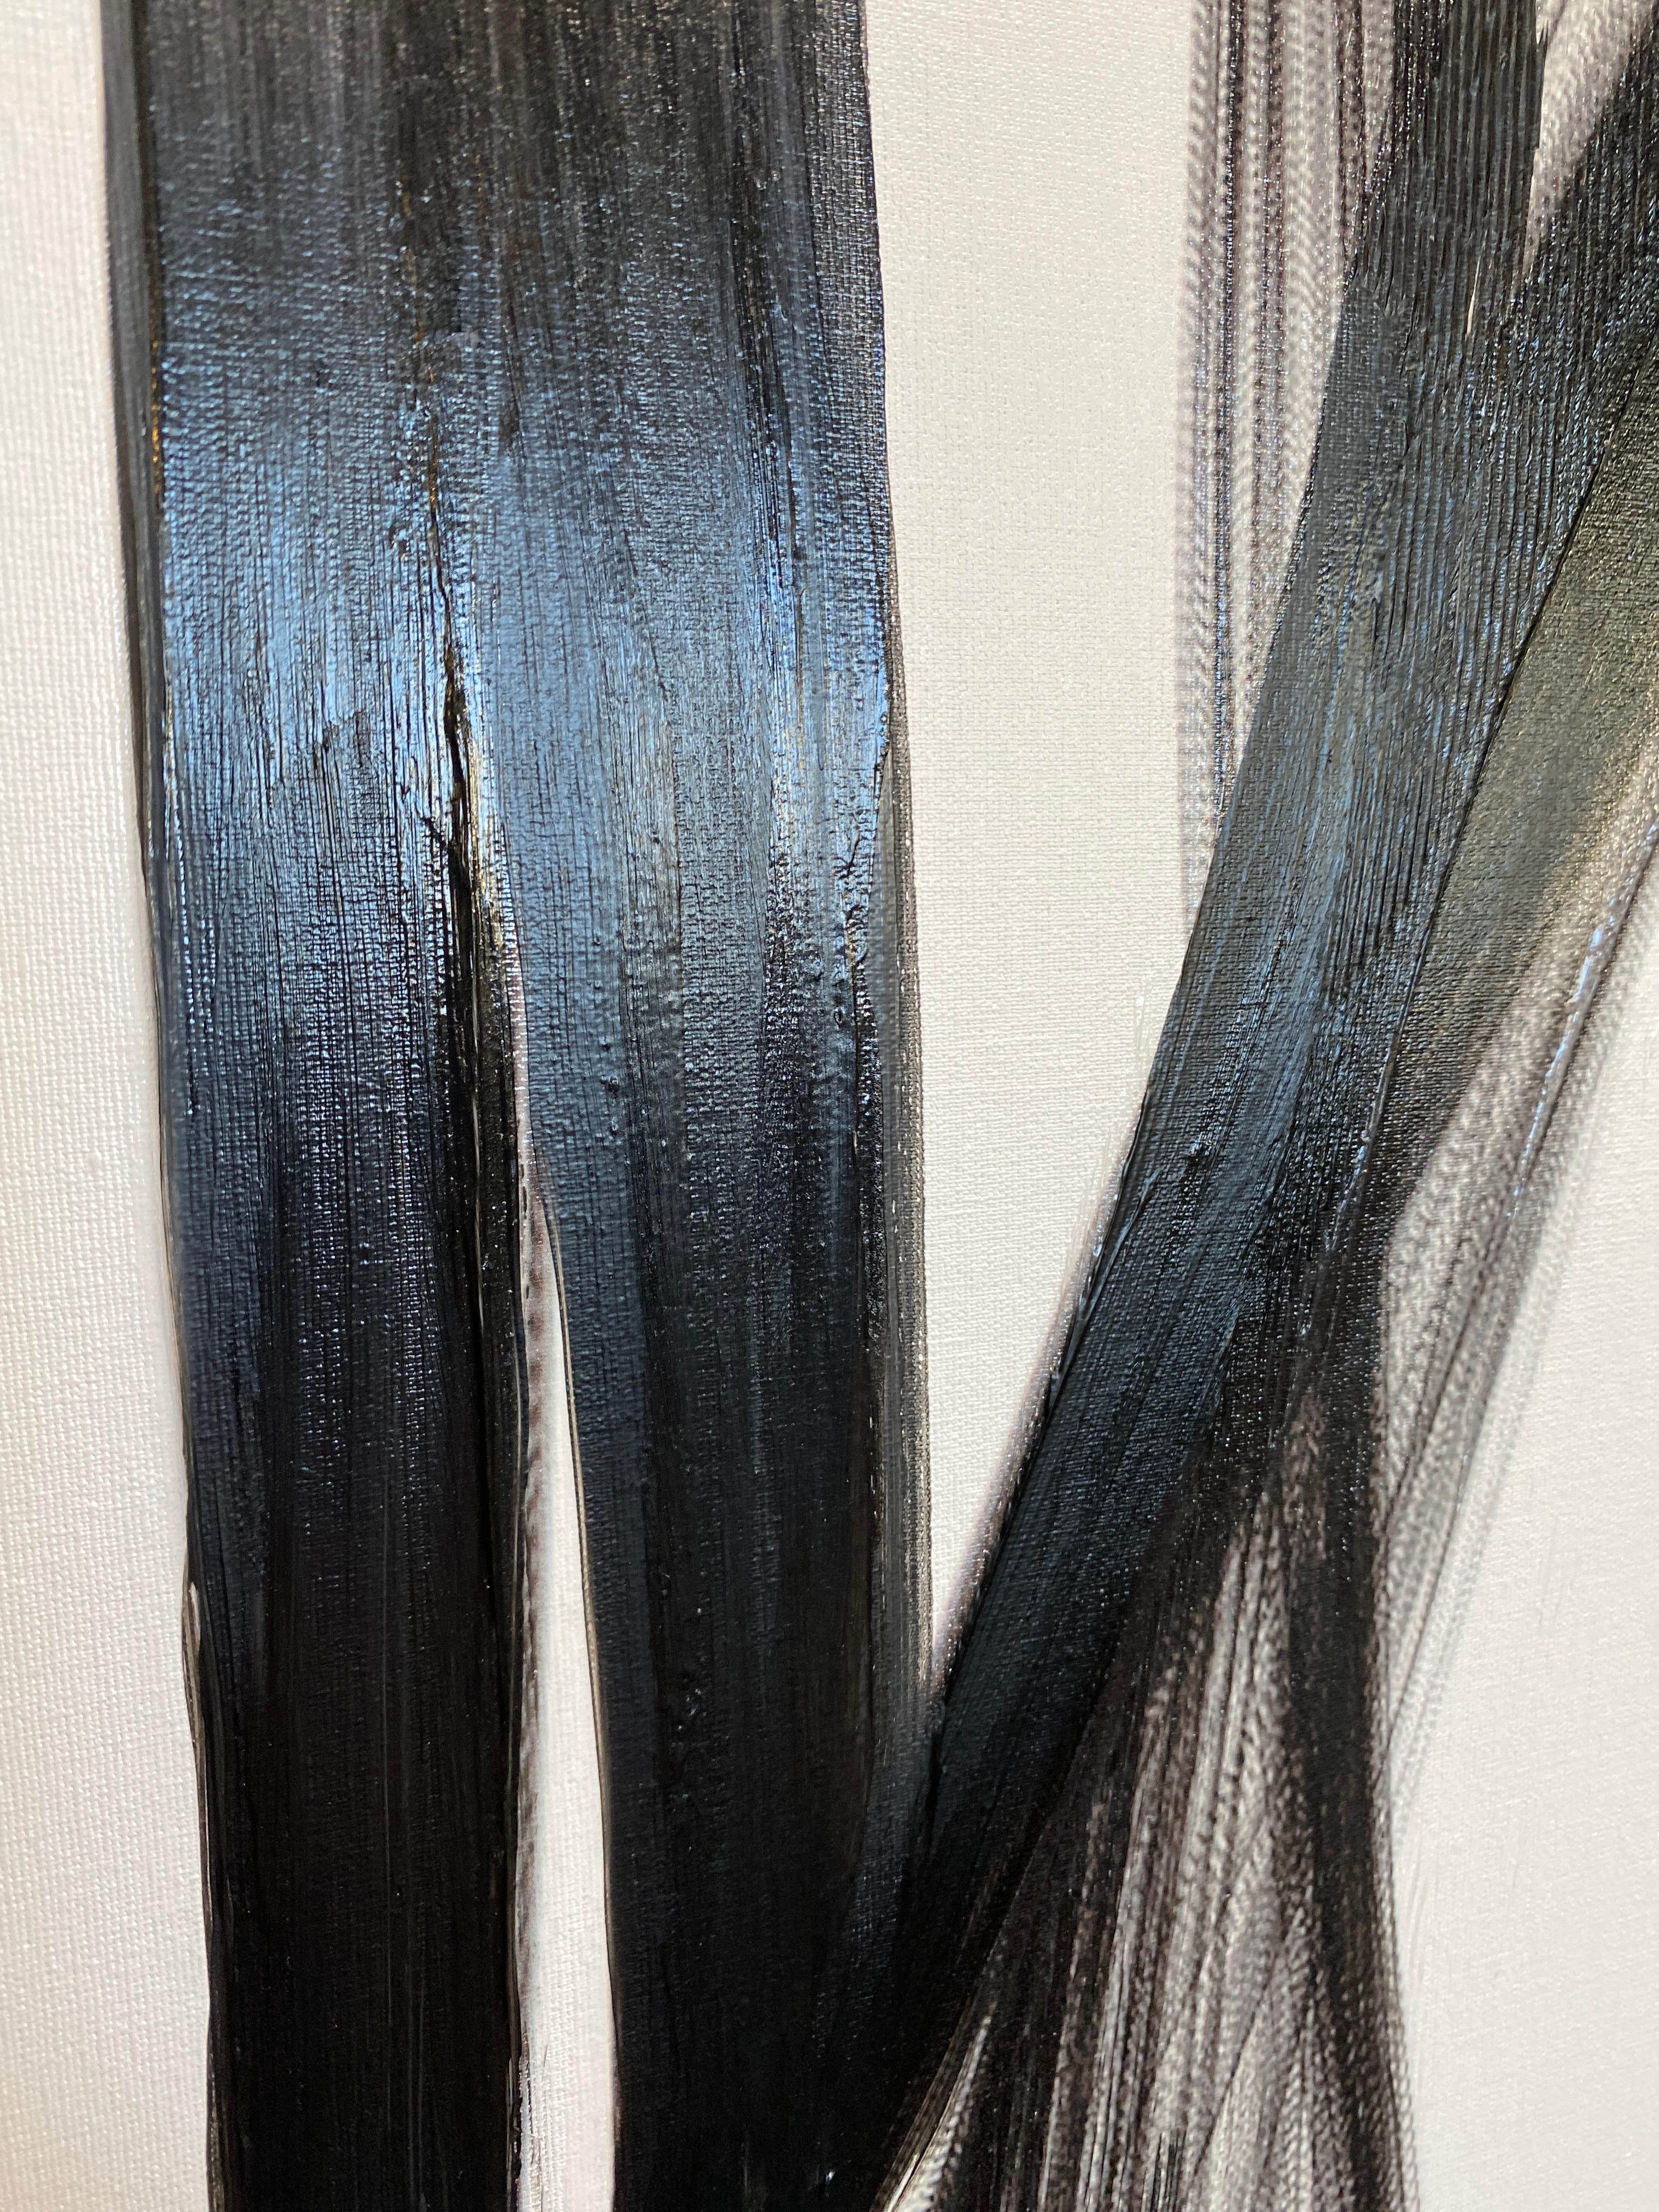 Schwarzweißes, minimalistisches New-Media-Gemälde auf Leinwand, 60x45 Zoll, Ausbruch (Grau), Interior Painting, von Irena Orlov